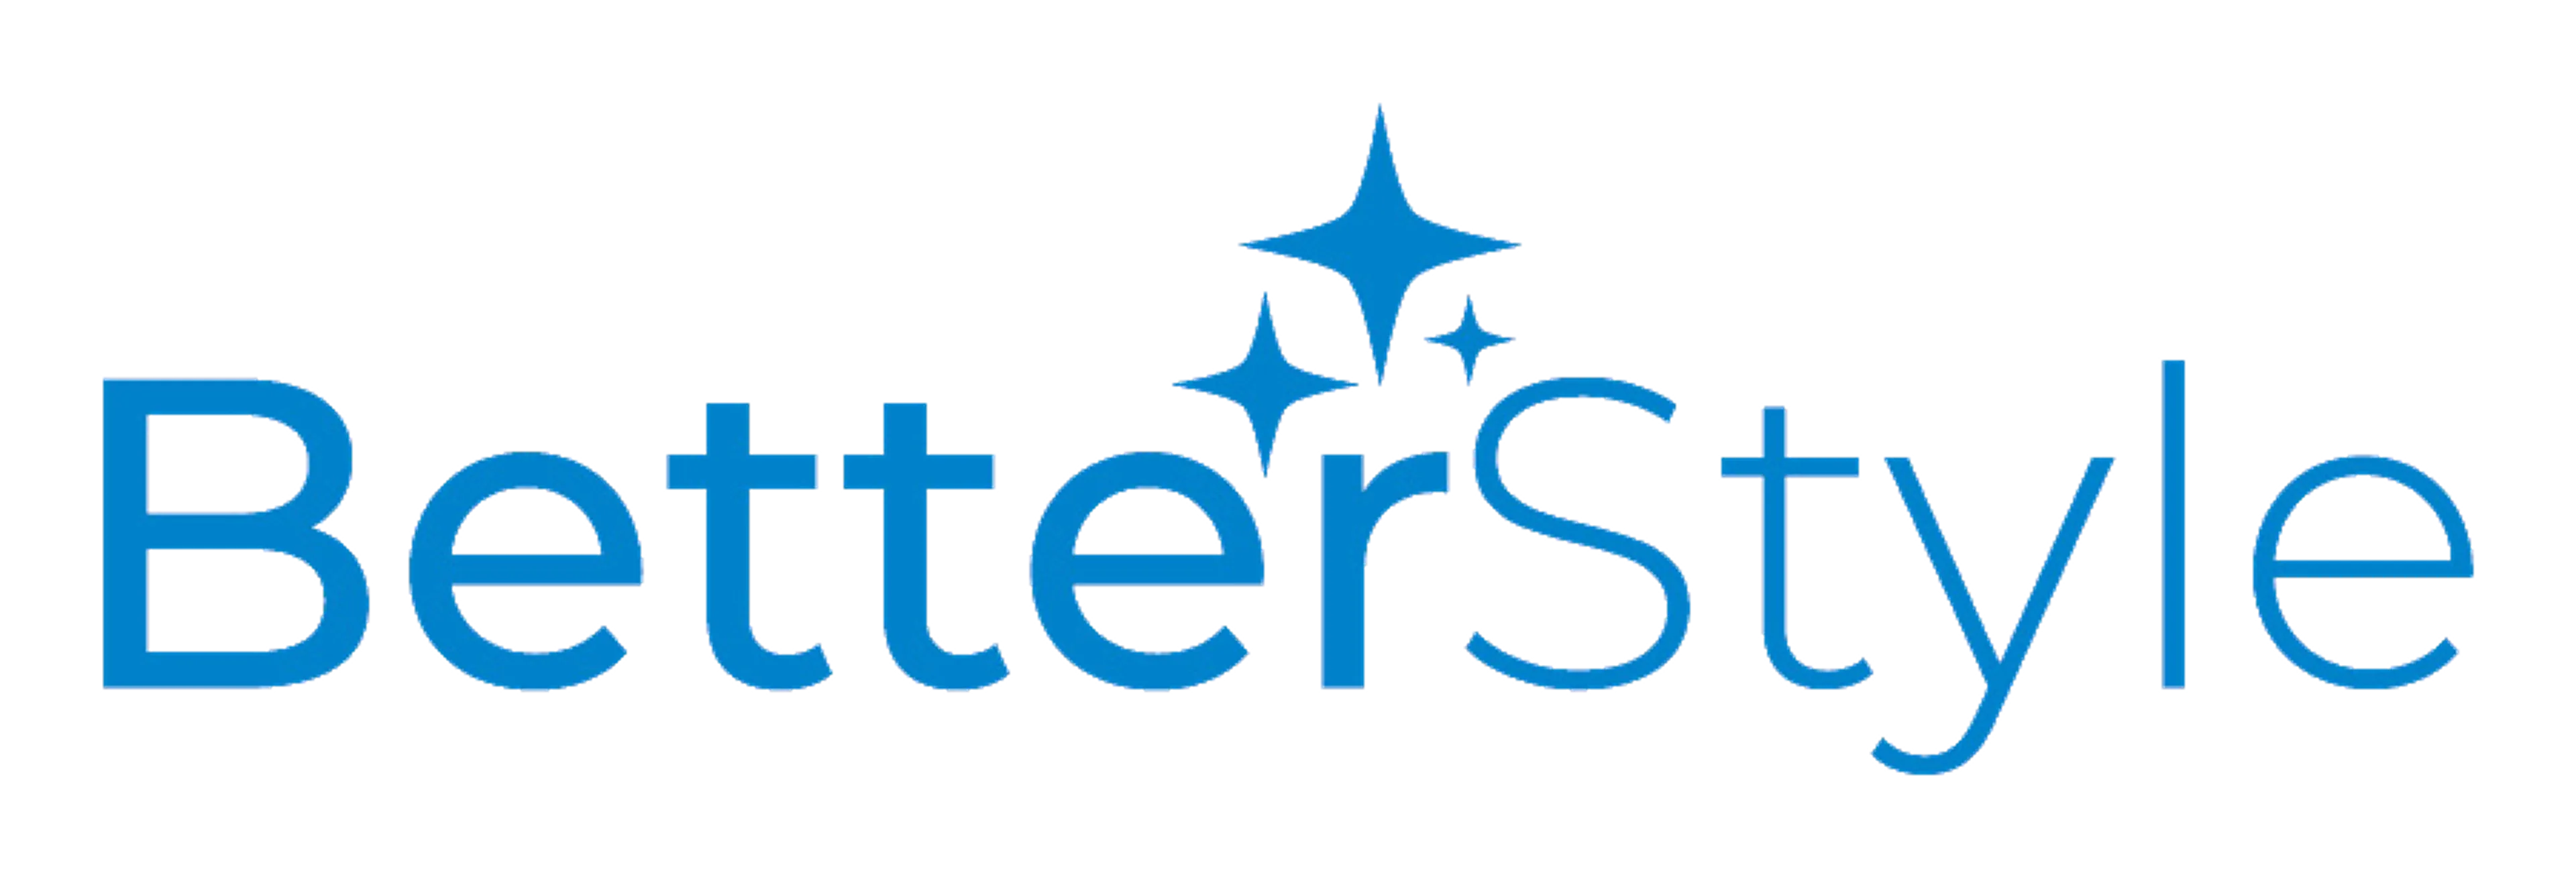 BETTERWARE logo